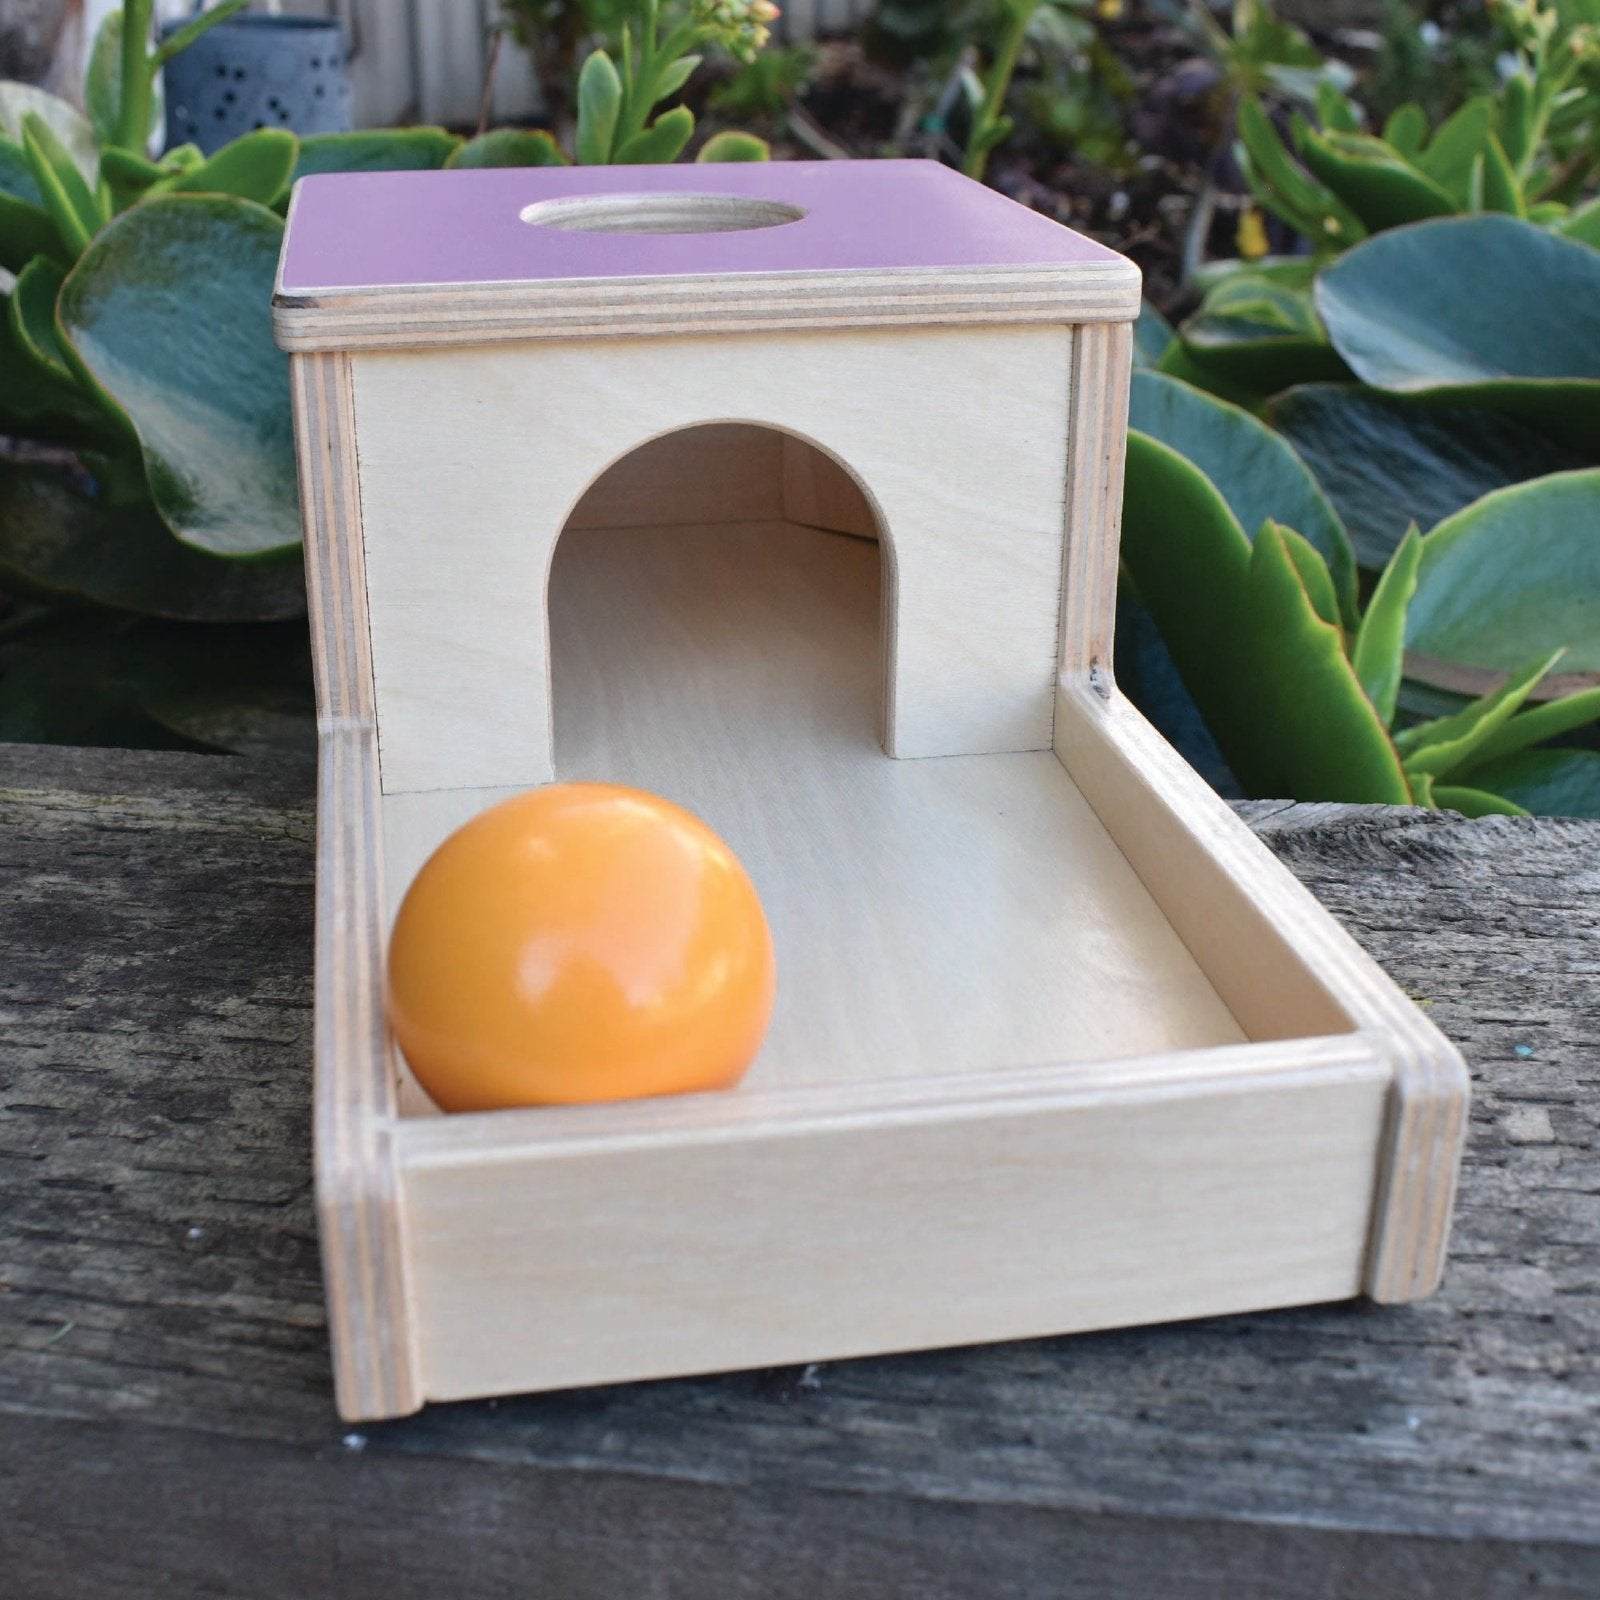 Montessori Object Permanence Ball Drop Box in Lavender